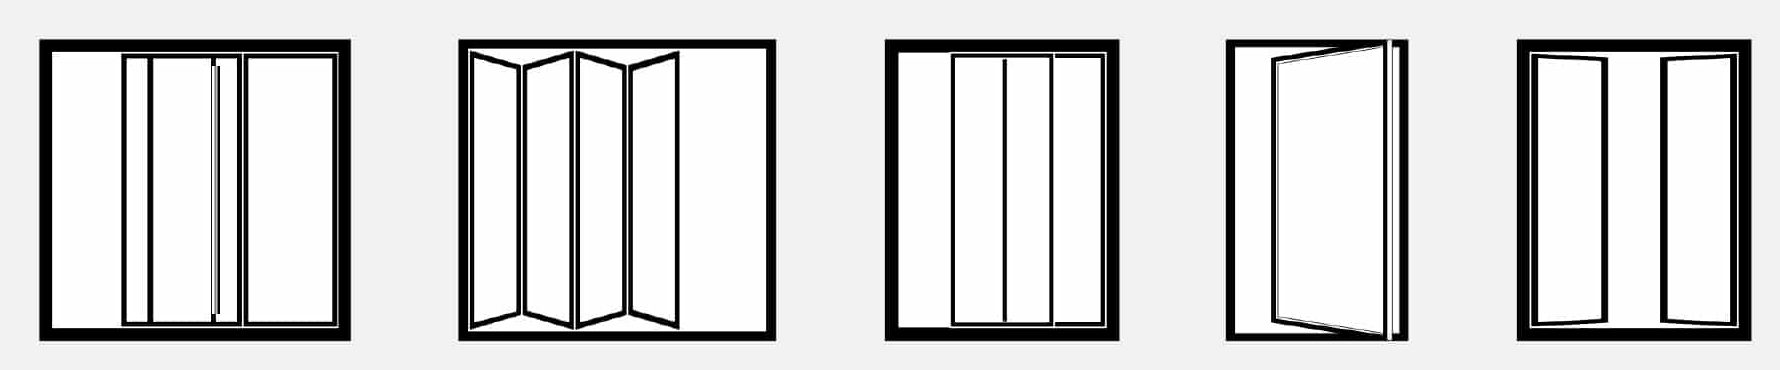 Icons of a multi-slide door, bifold door, sliding door, pivot door, and hinged door.